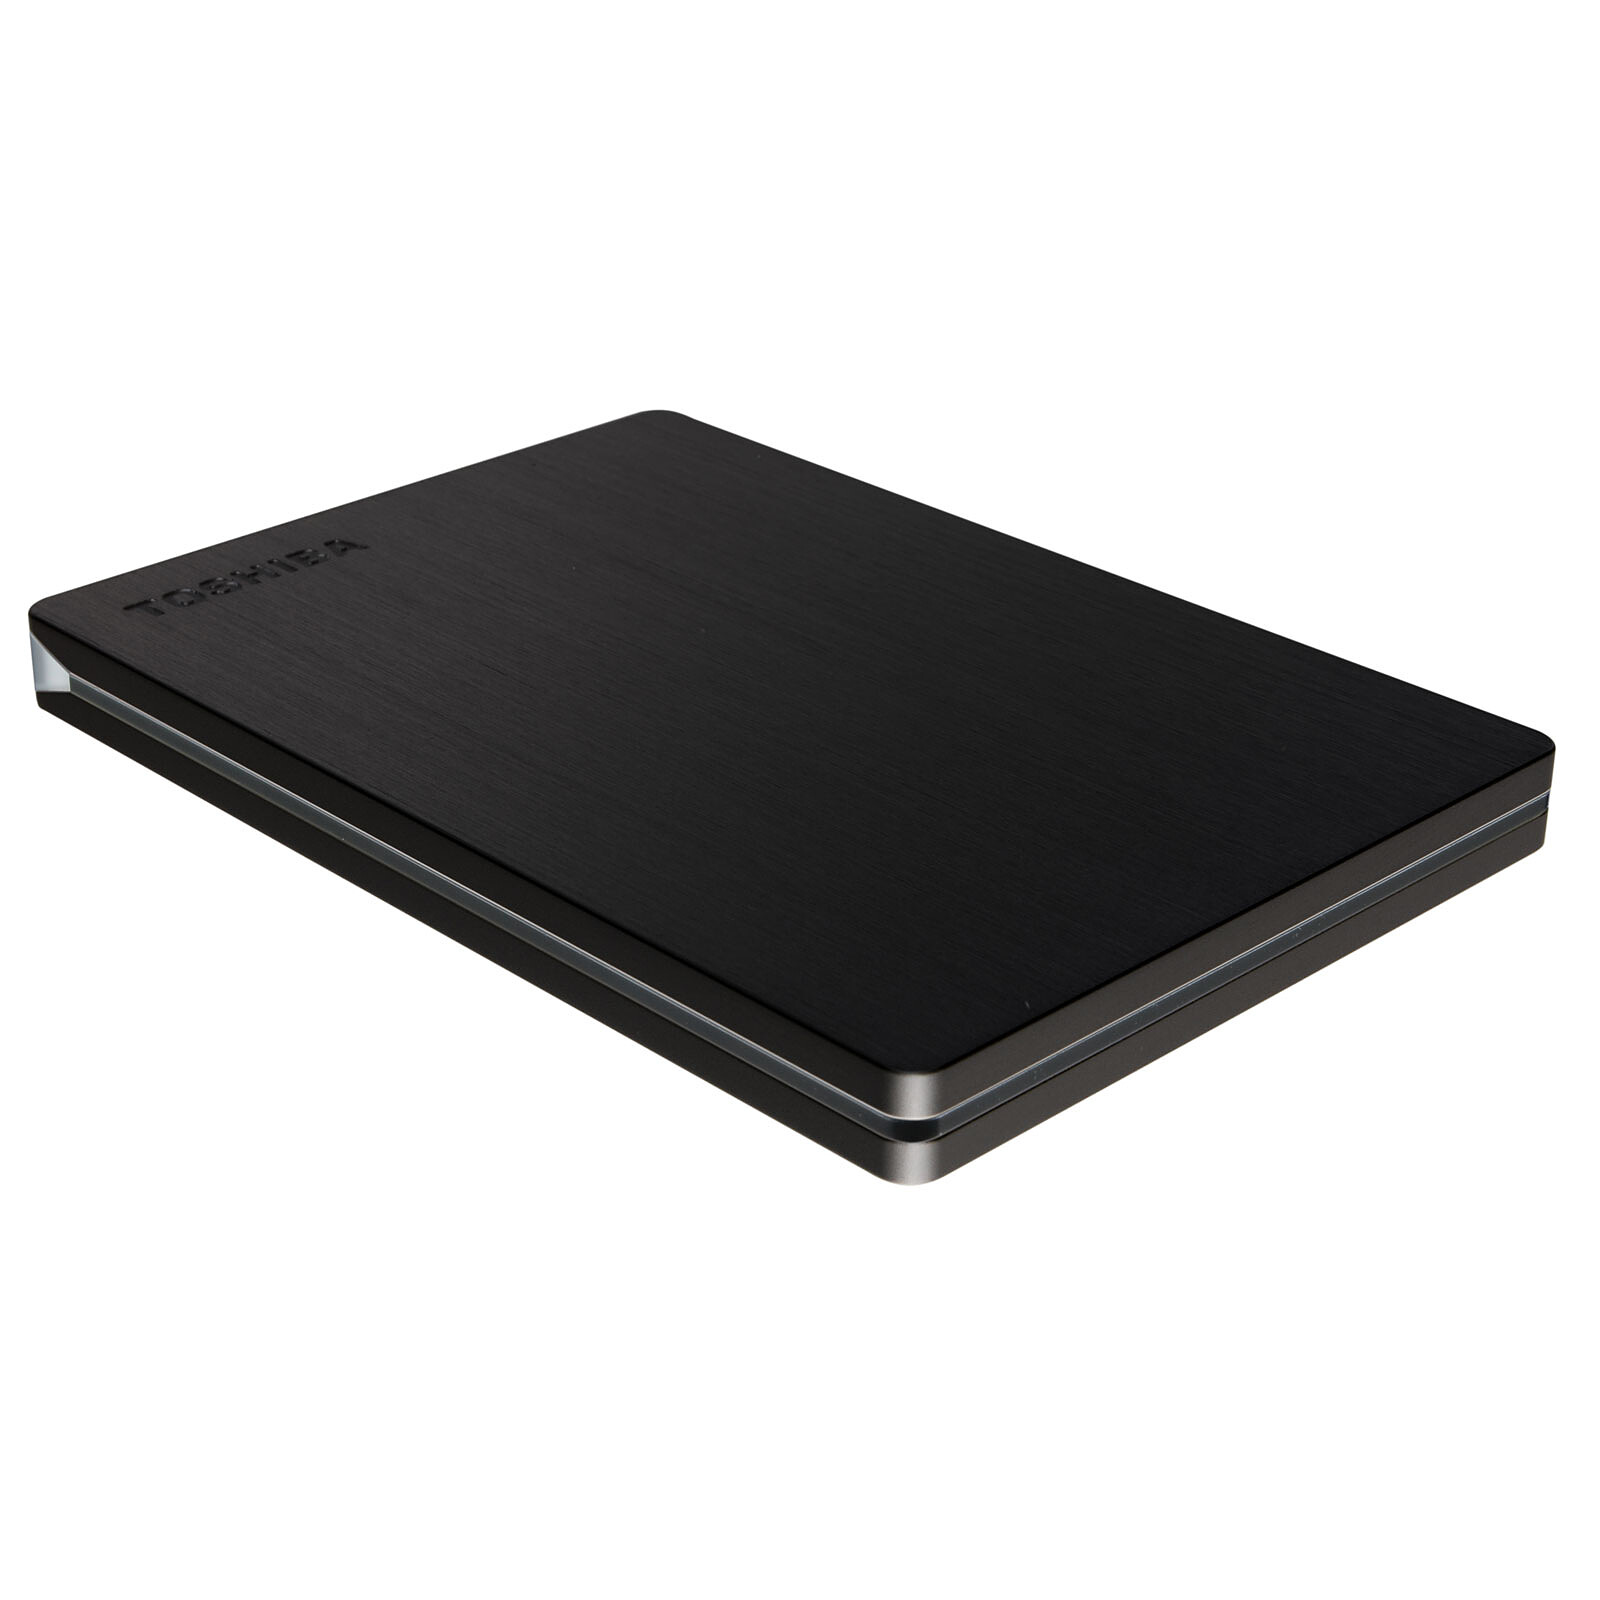 Toshiba Stor.e Slim 500 Go Noir - Disque dur externe - Garantie 3